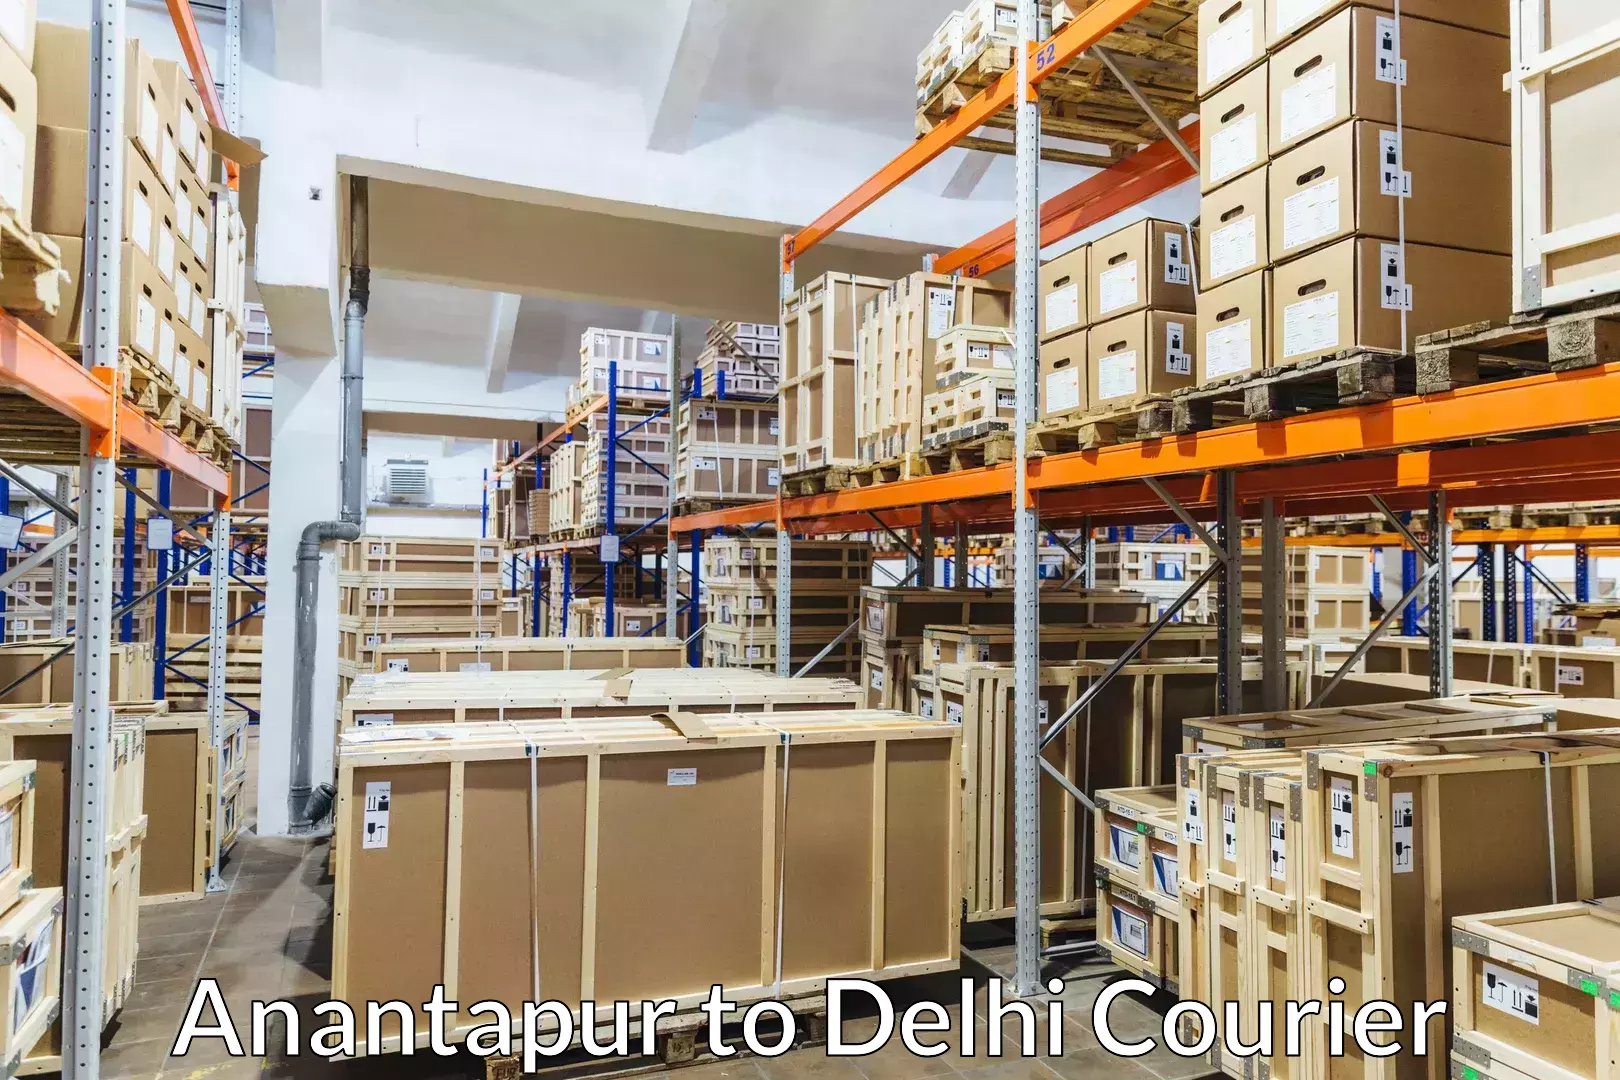 Door-to-door relocation services Anantapur to NIT Delhi